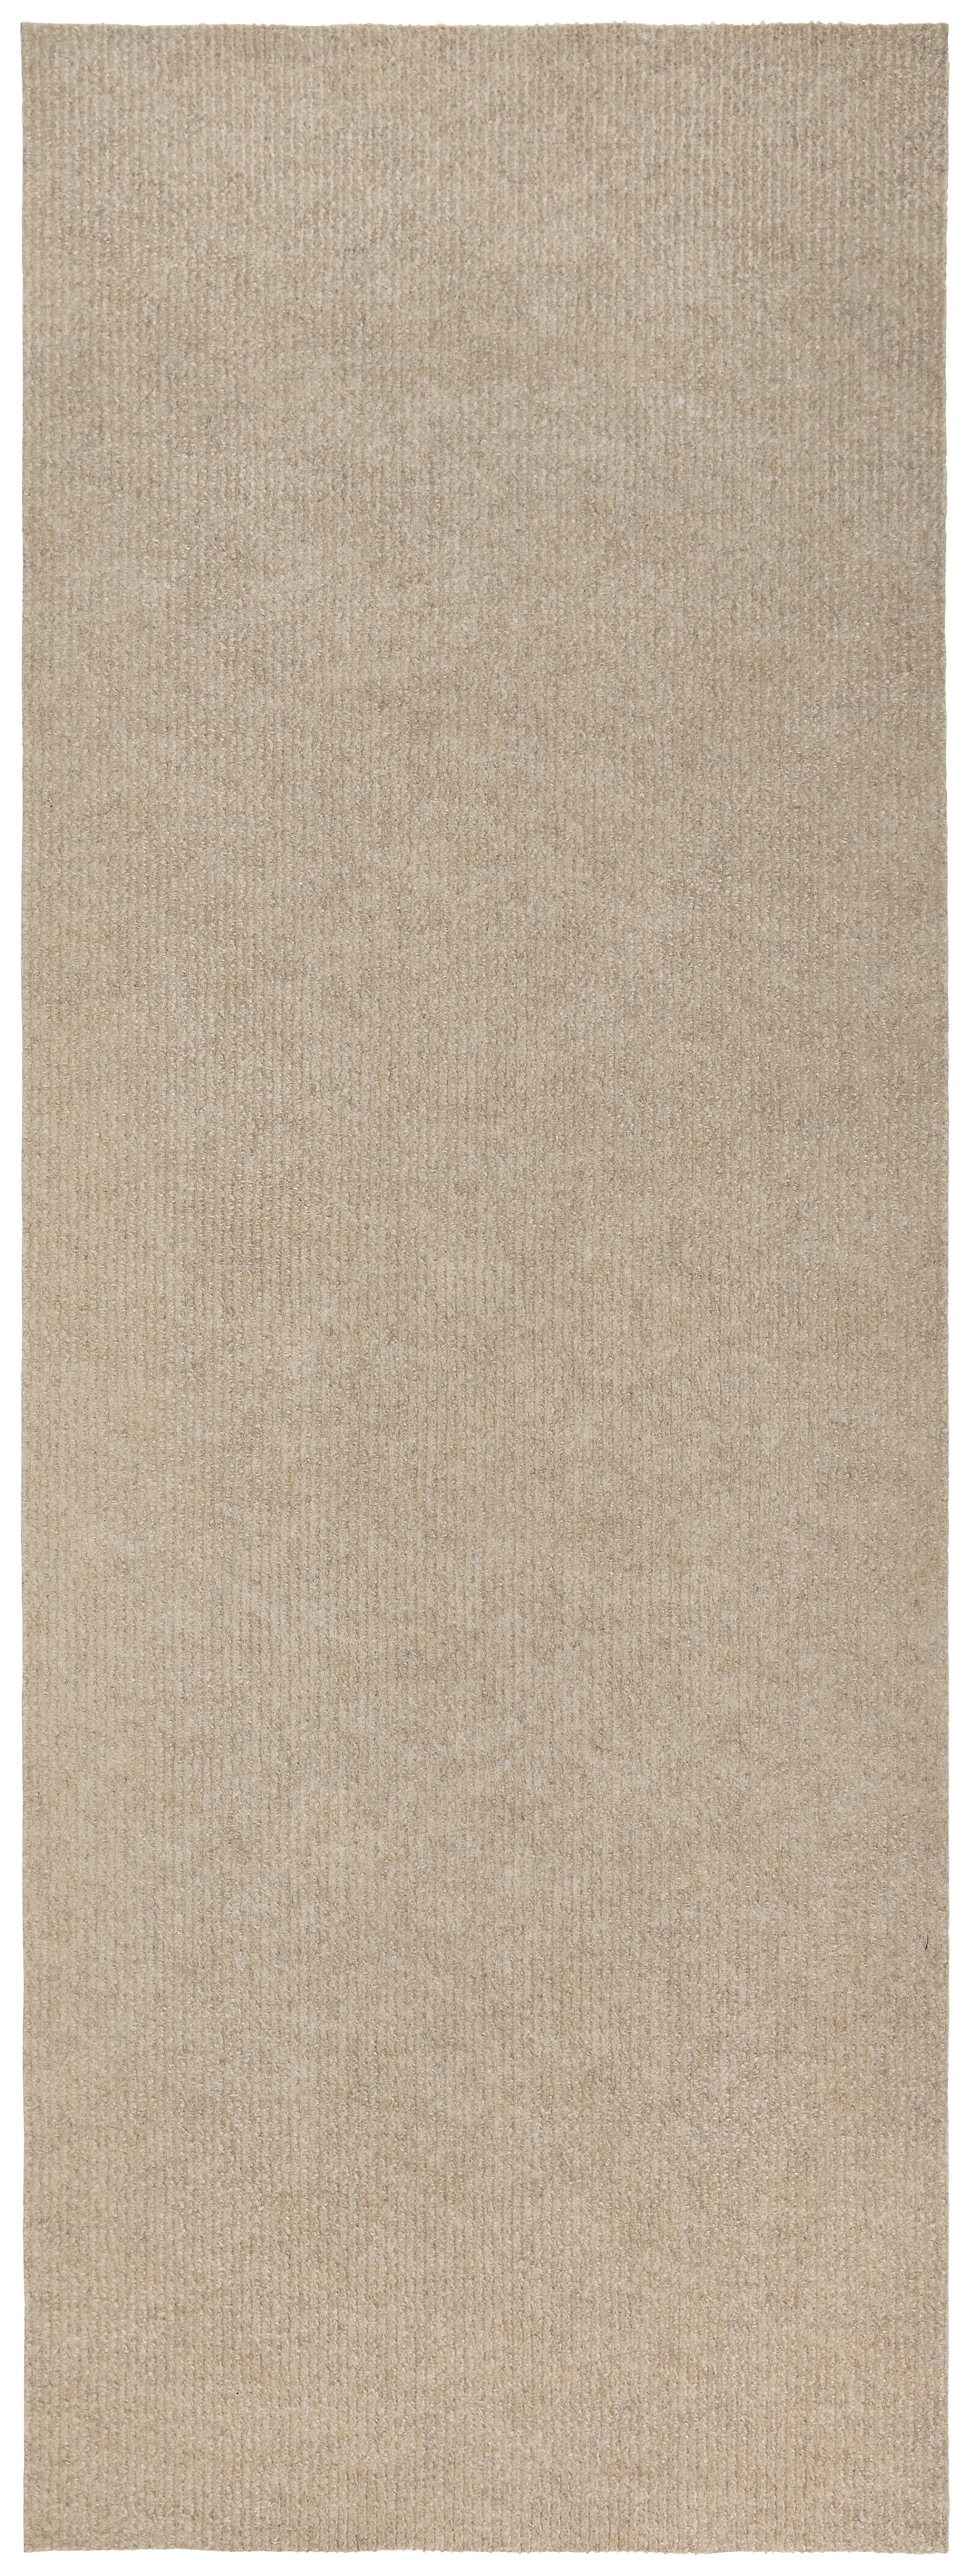 Lábtörlő Niki 66/180cm - Bézs, konvencionális, Textil (66/180cm) - Modern Living